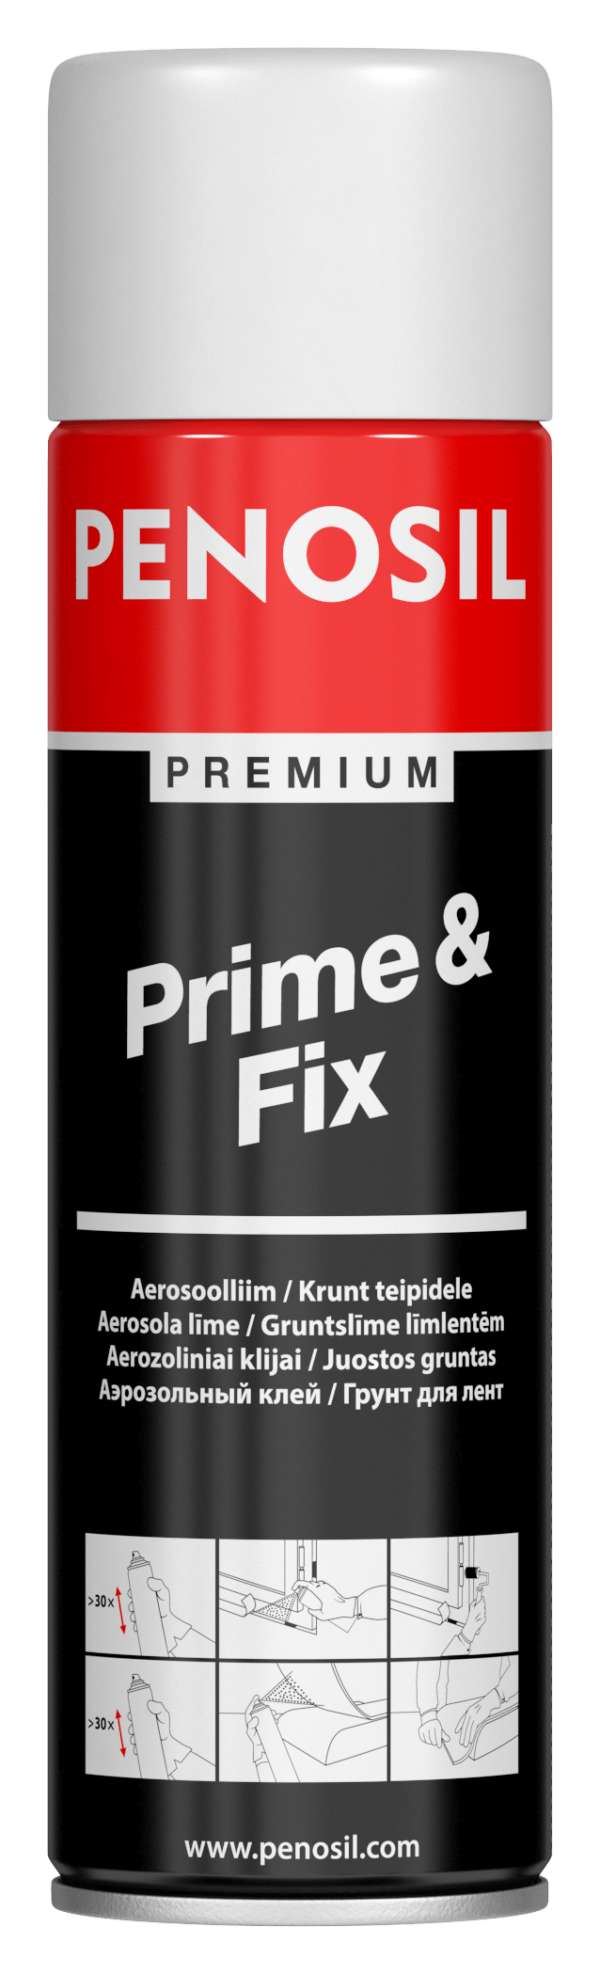 PENOSIL Prime&Fix – это аэрозольный клей общего назначения